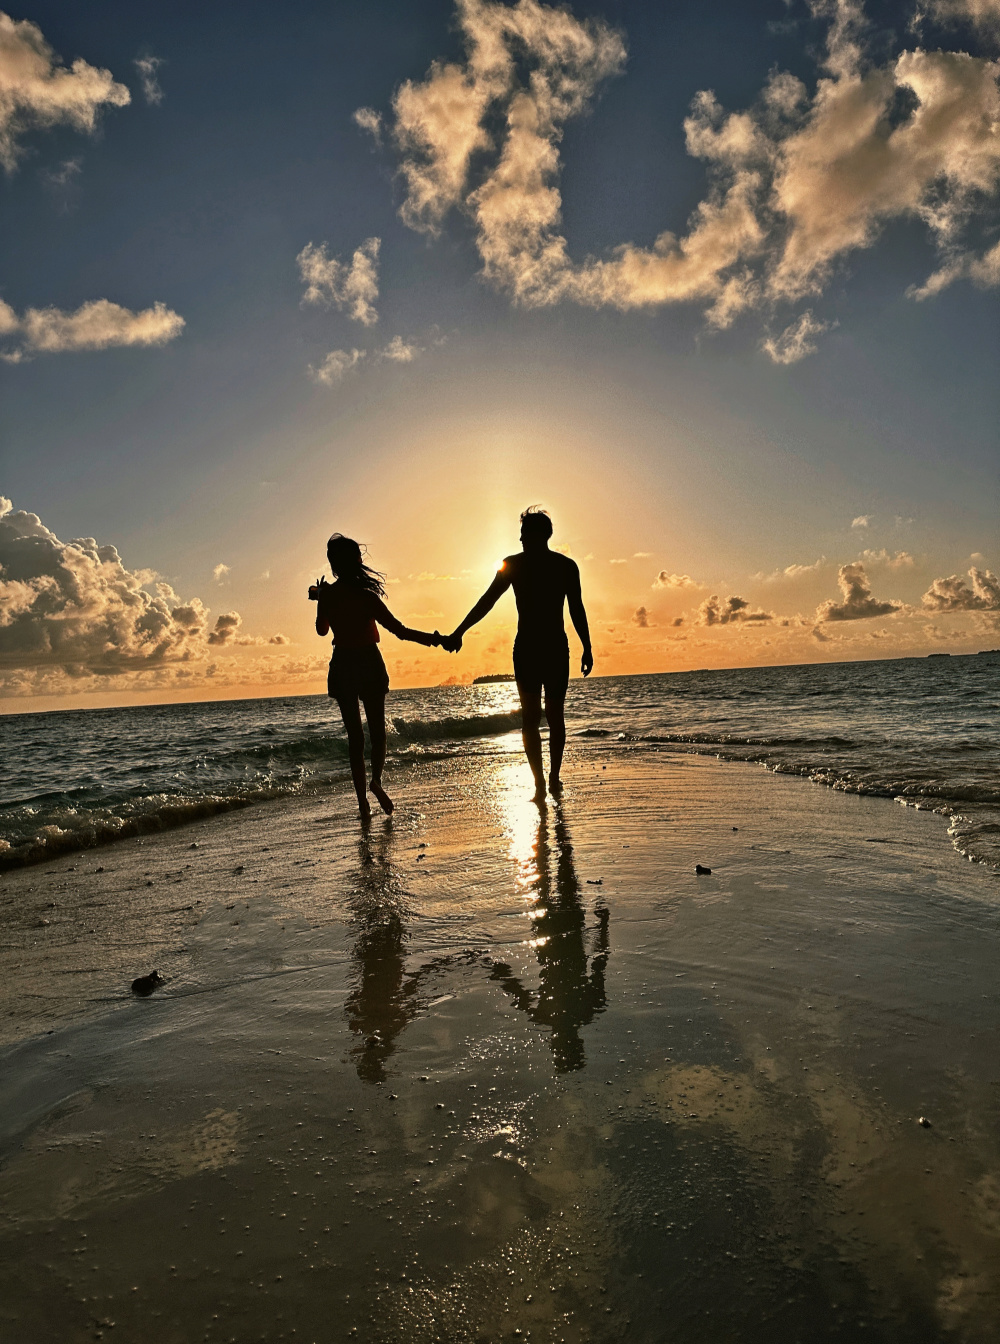 徐艺洋分享的两张合影则是两人牵手漫步海边的背影,向着美好的阳光进